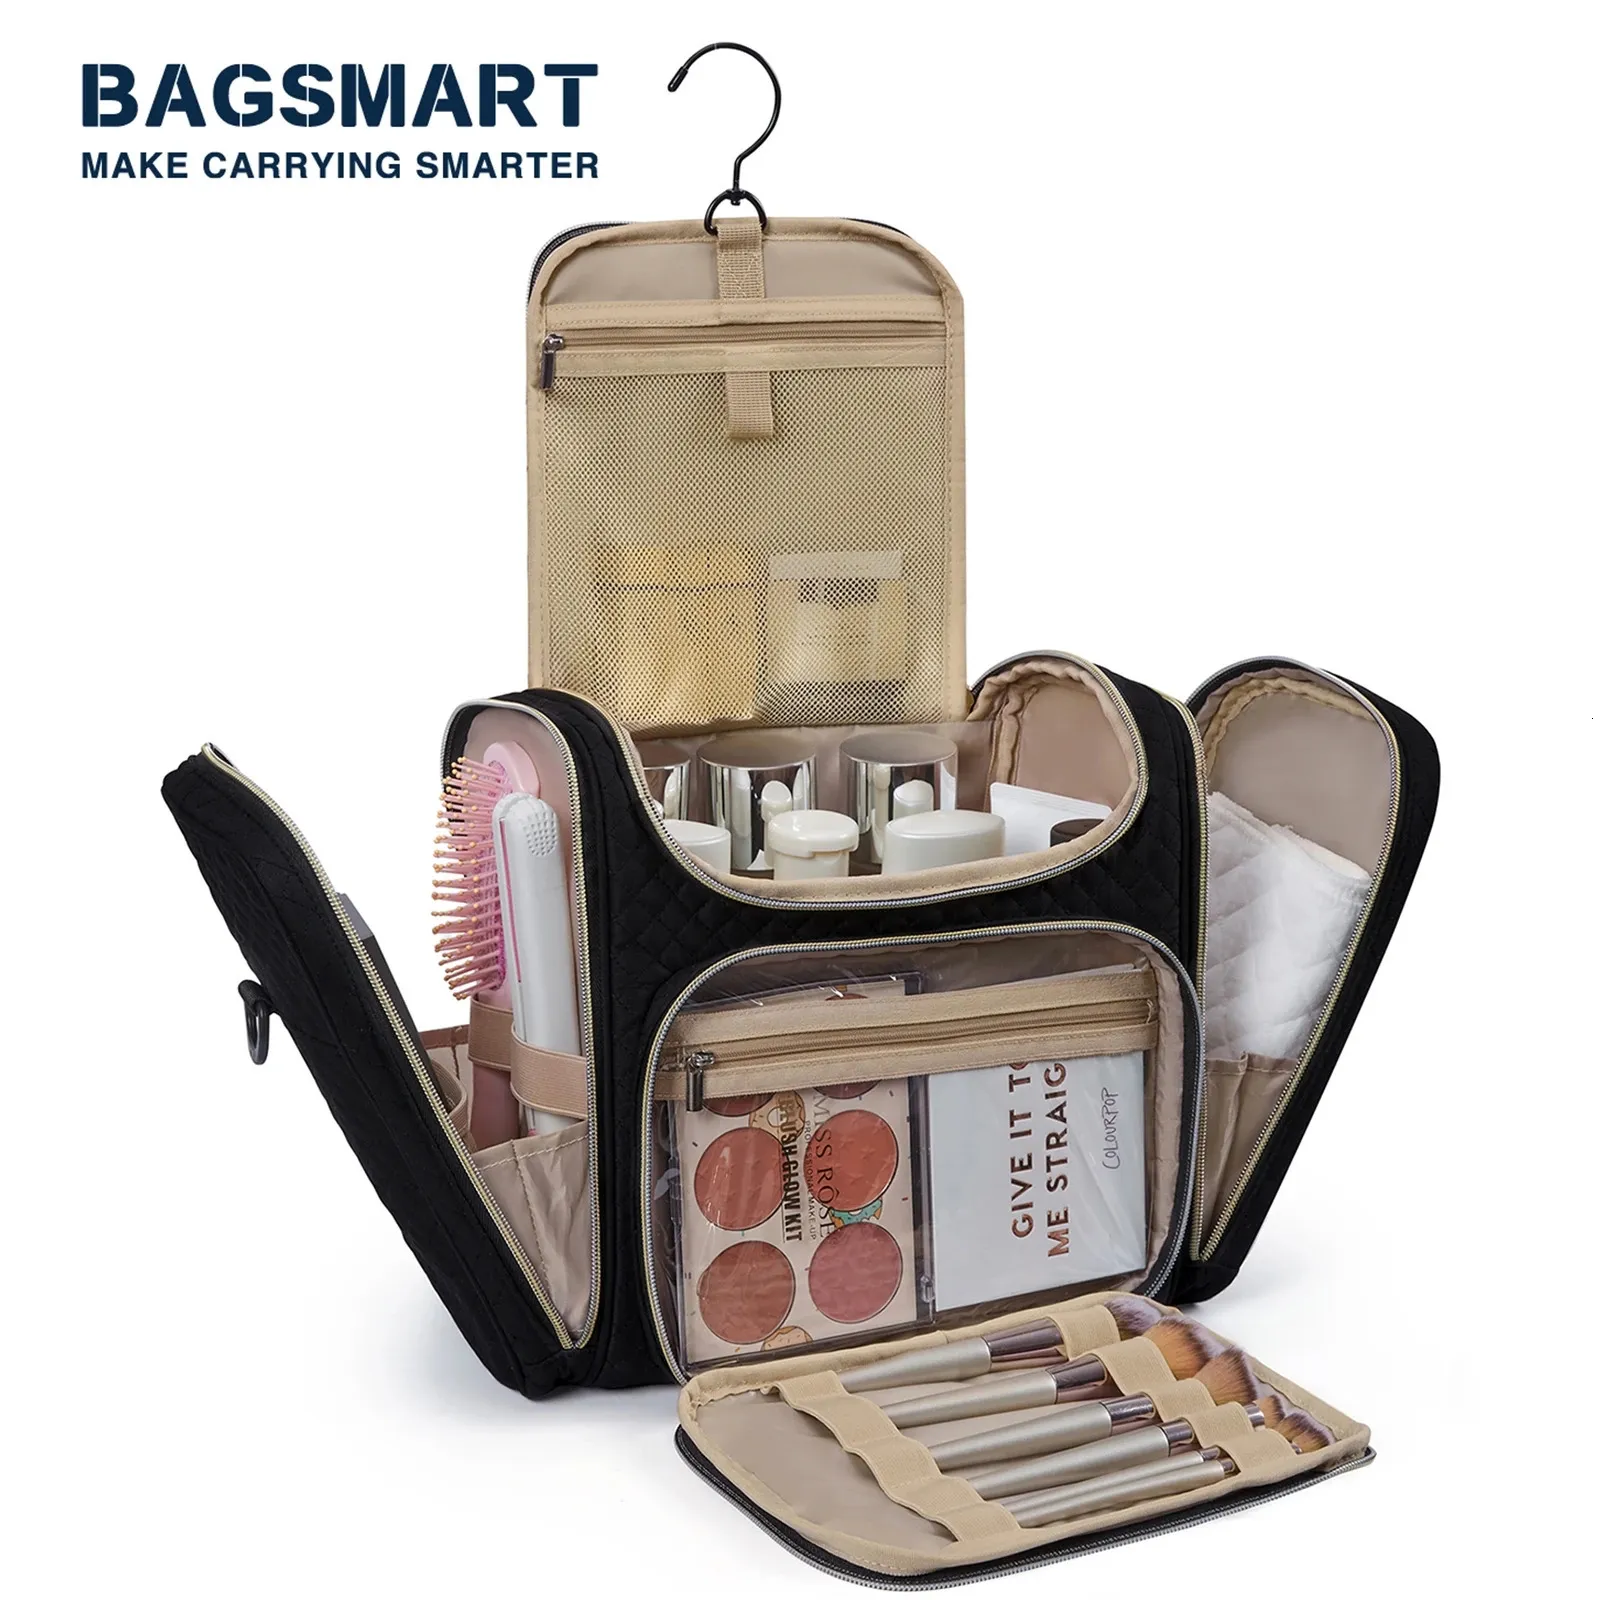 Bagsmart Makeup Back для женщин с водостойкой для водостойких туалетов с большими возможностями.